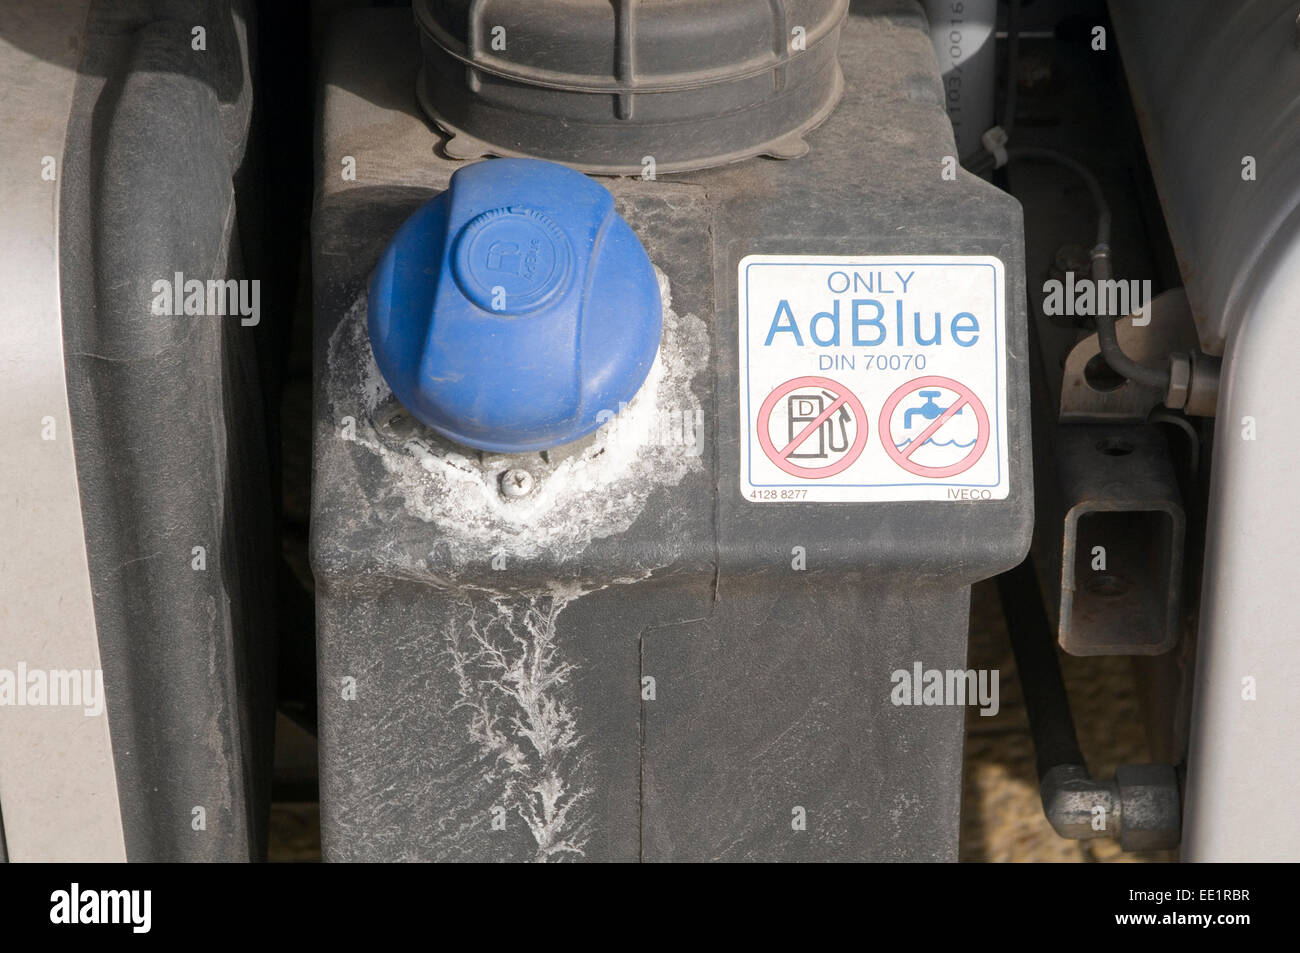 Der Adblue-Bluff und die Folgen: VW-Konzern droht der Zorn der Diesel-Fahrer